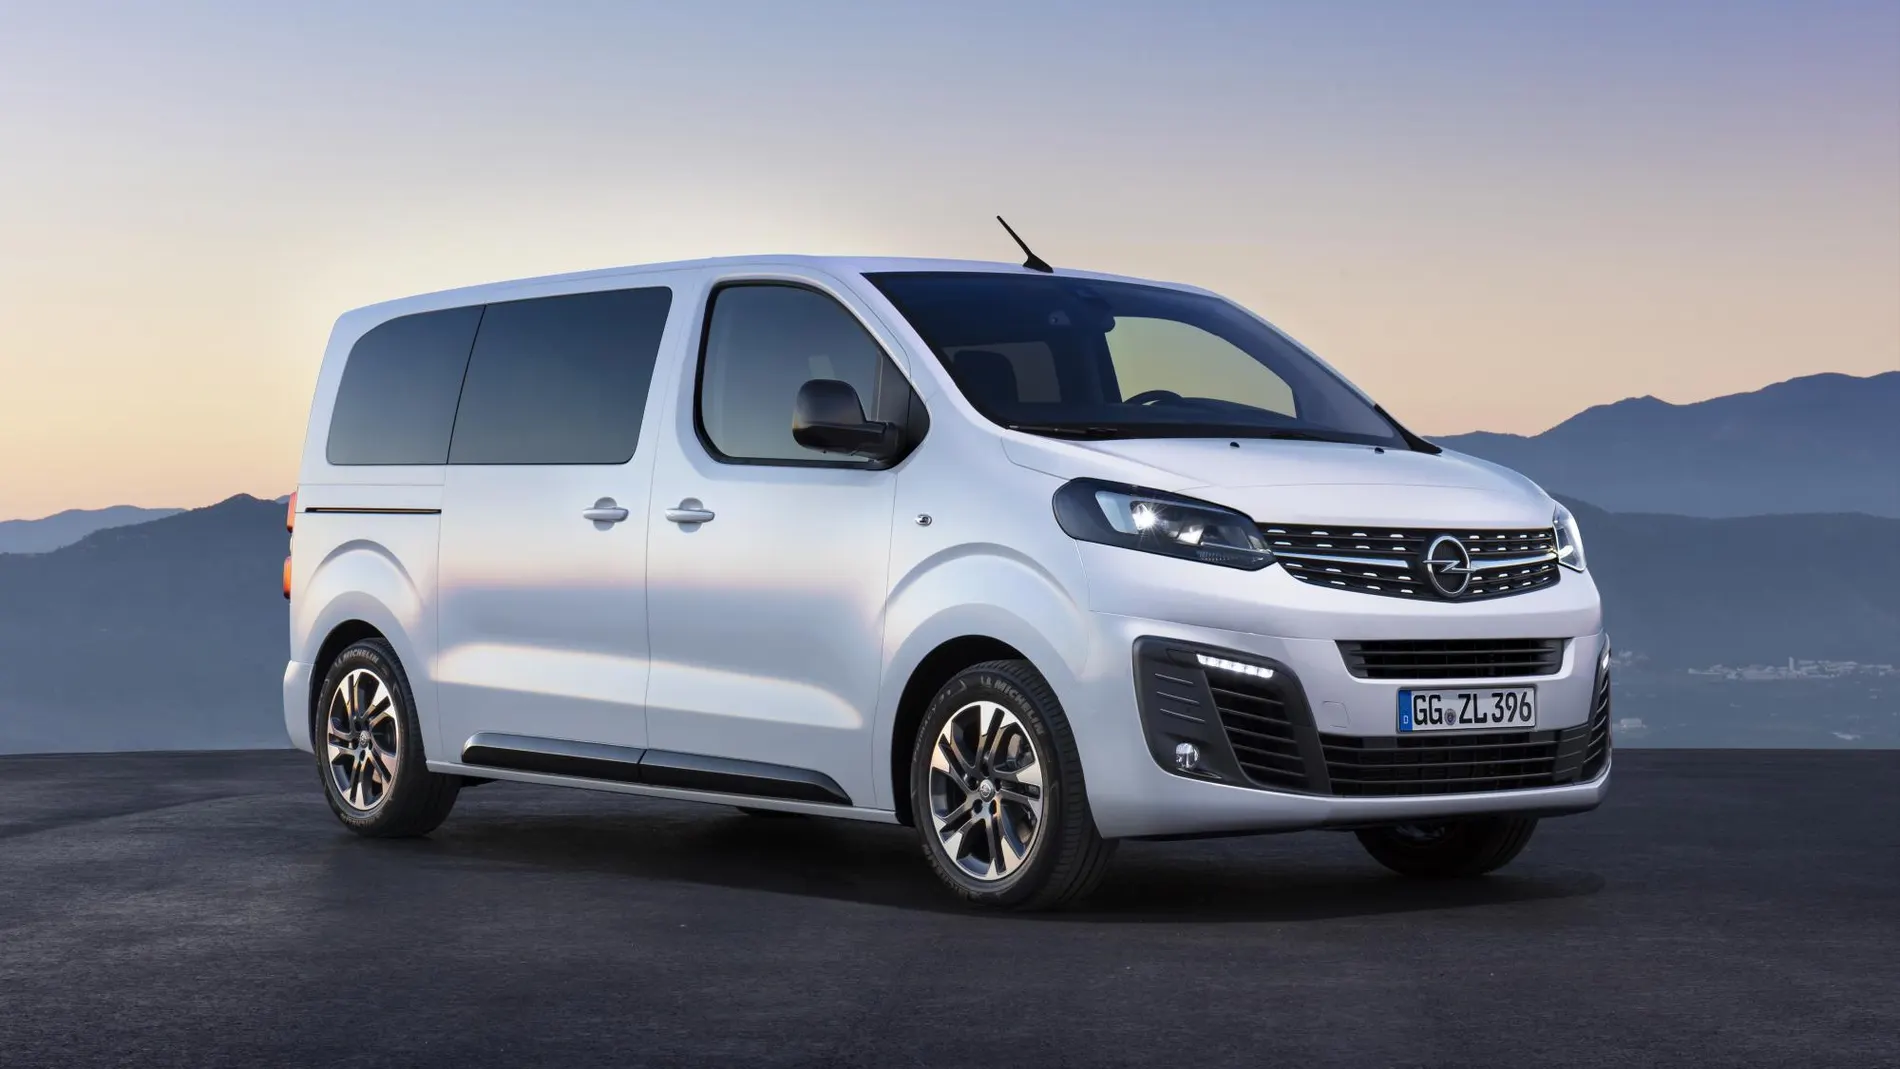 Nuevo Opel Zafira Life: el modelo de referencia llega a su cuarta generación